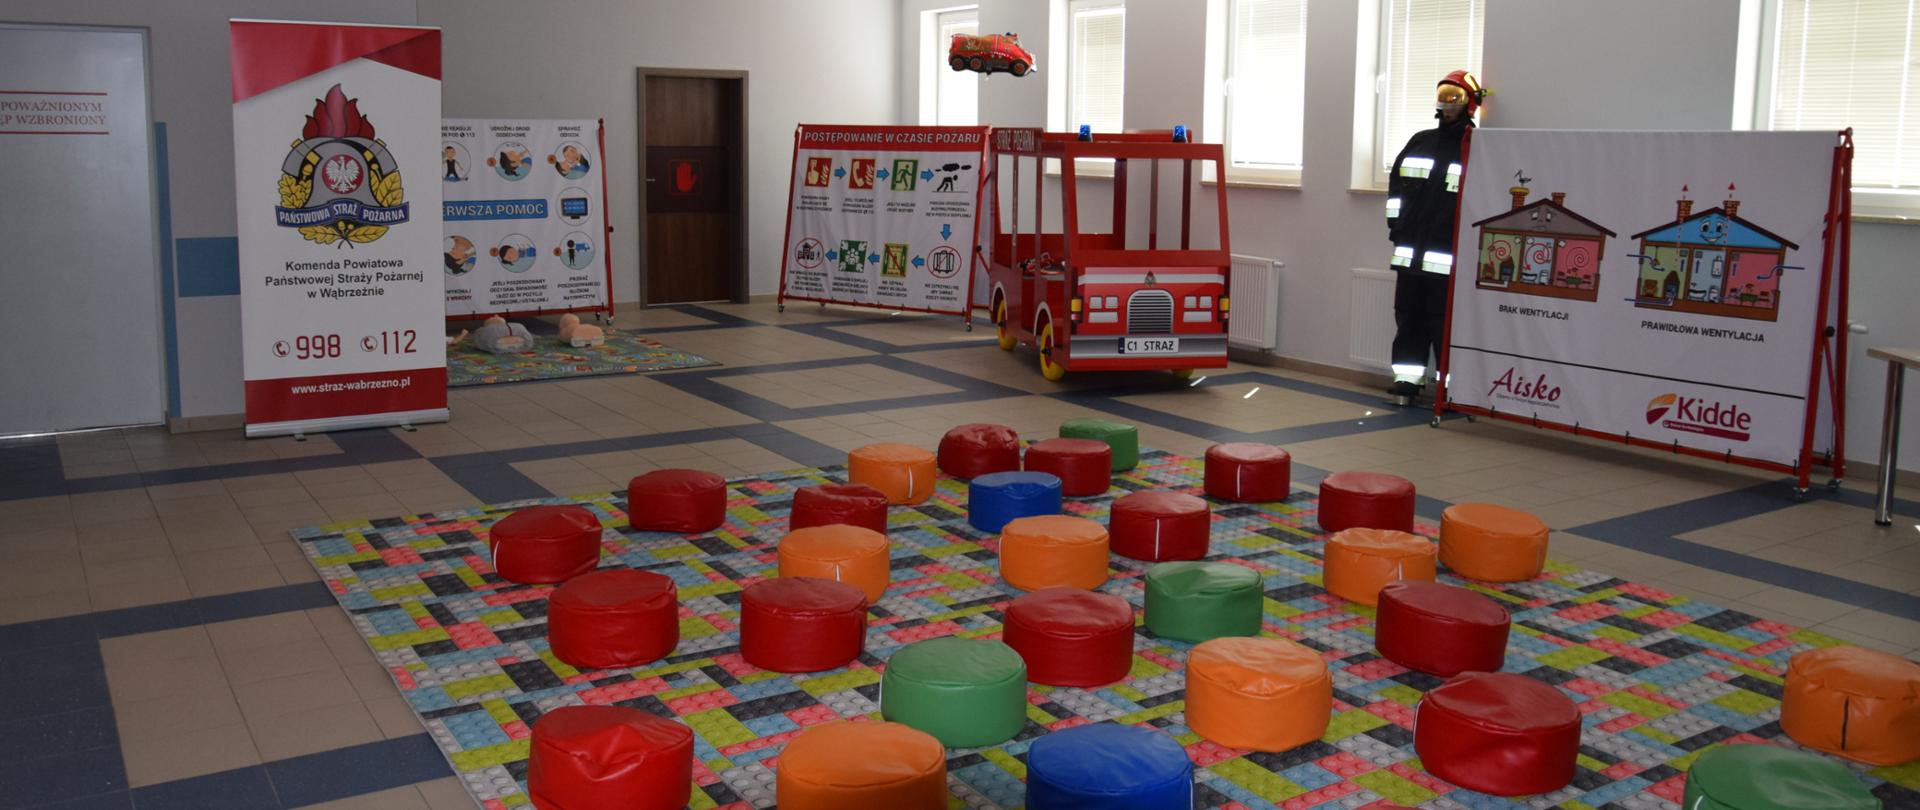 Zdjęcie przedstawia salę edukacyjną, przygotowaną na przyjęcie dzieci na zajęcia. Kolorowe siedziska, pomoce edukacyjne...